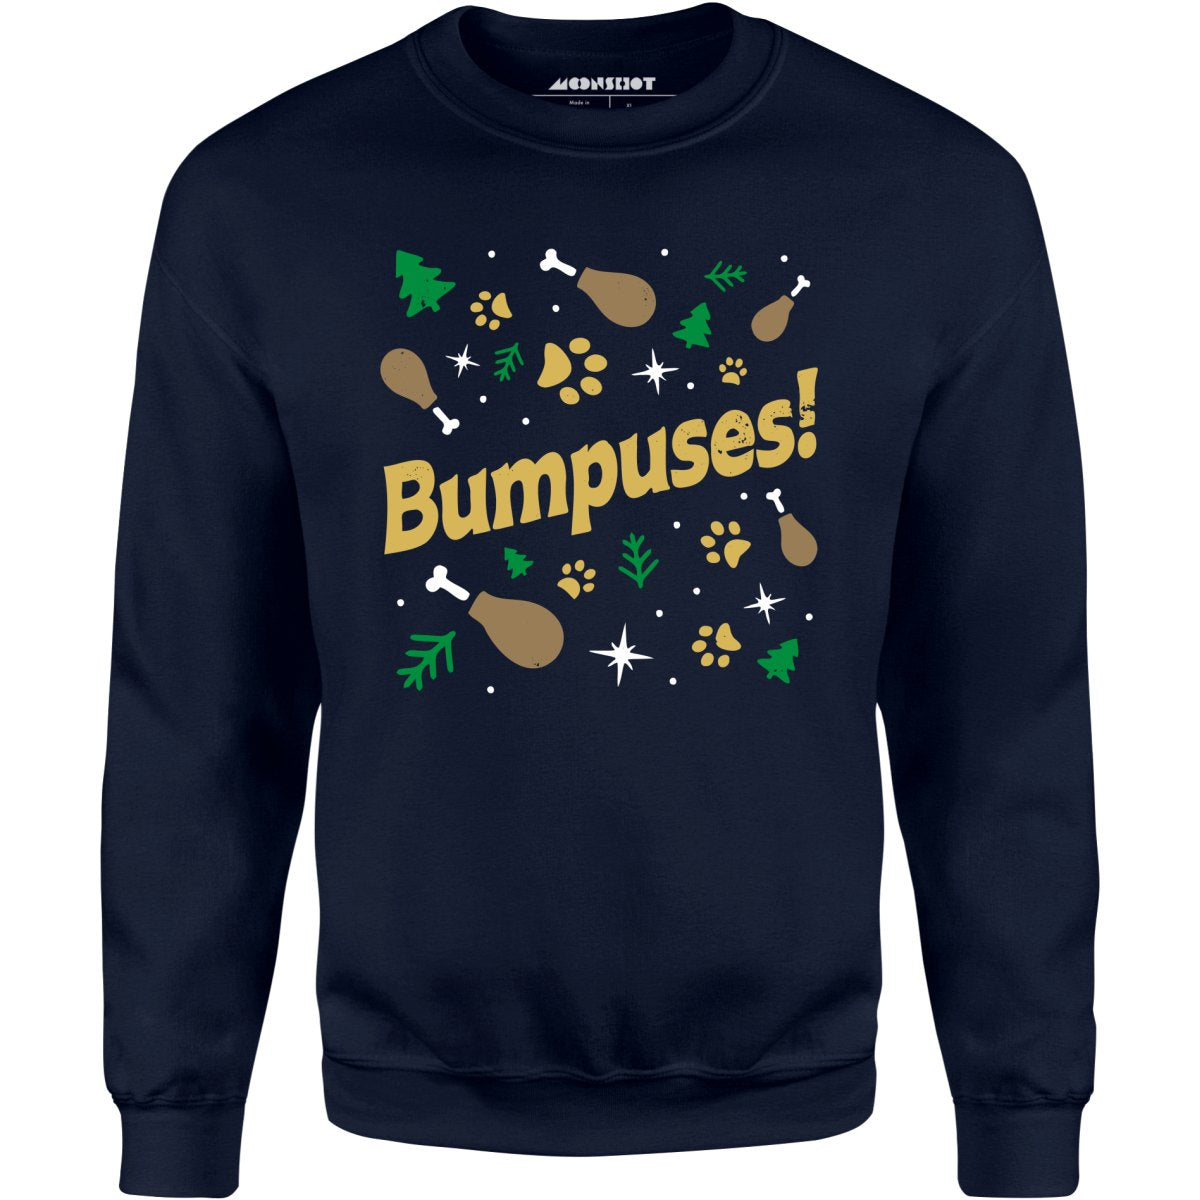 Bumpuses! - Unisex Sweatshirt